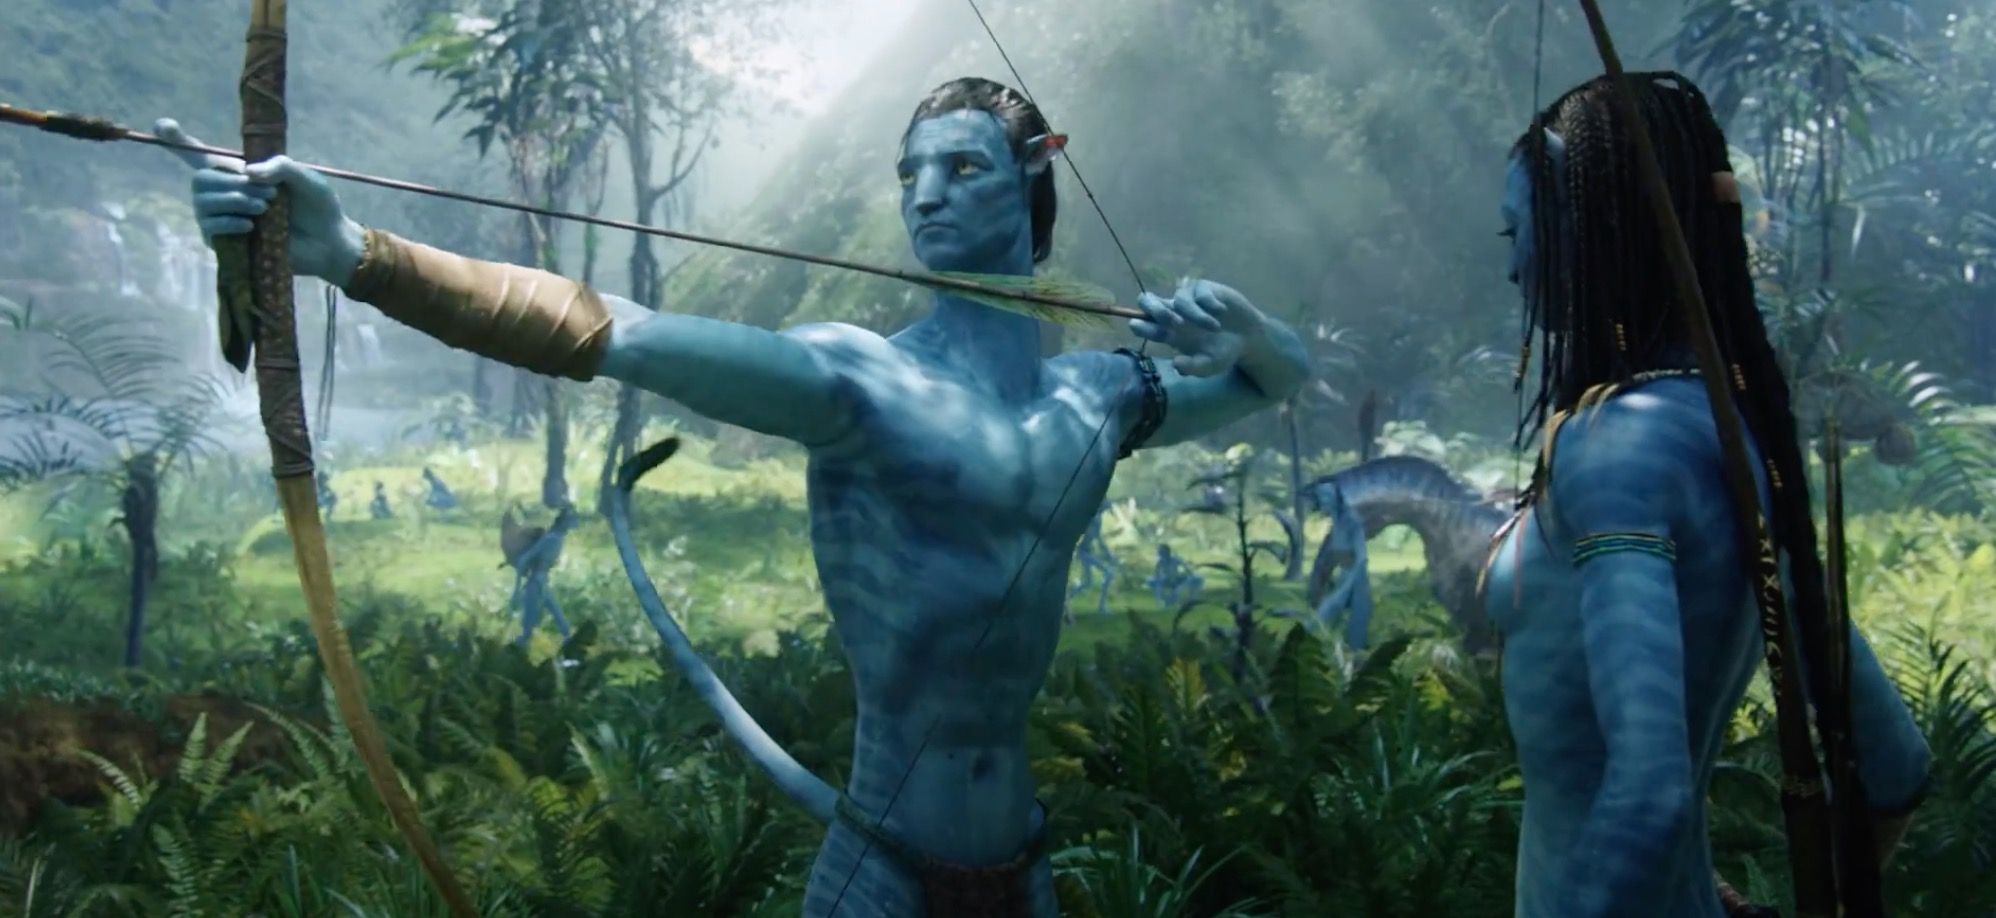 Sam Worthington as his Na'vi avatar holding a bow and arrow next to Neytiri in Avatar.